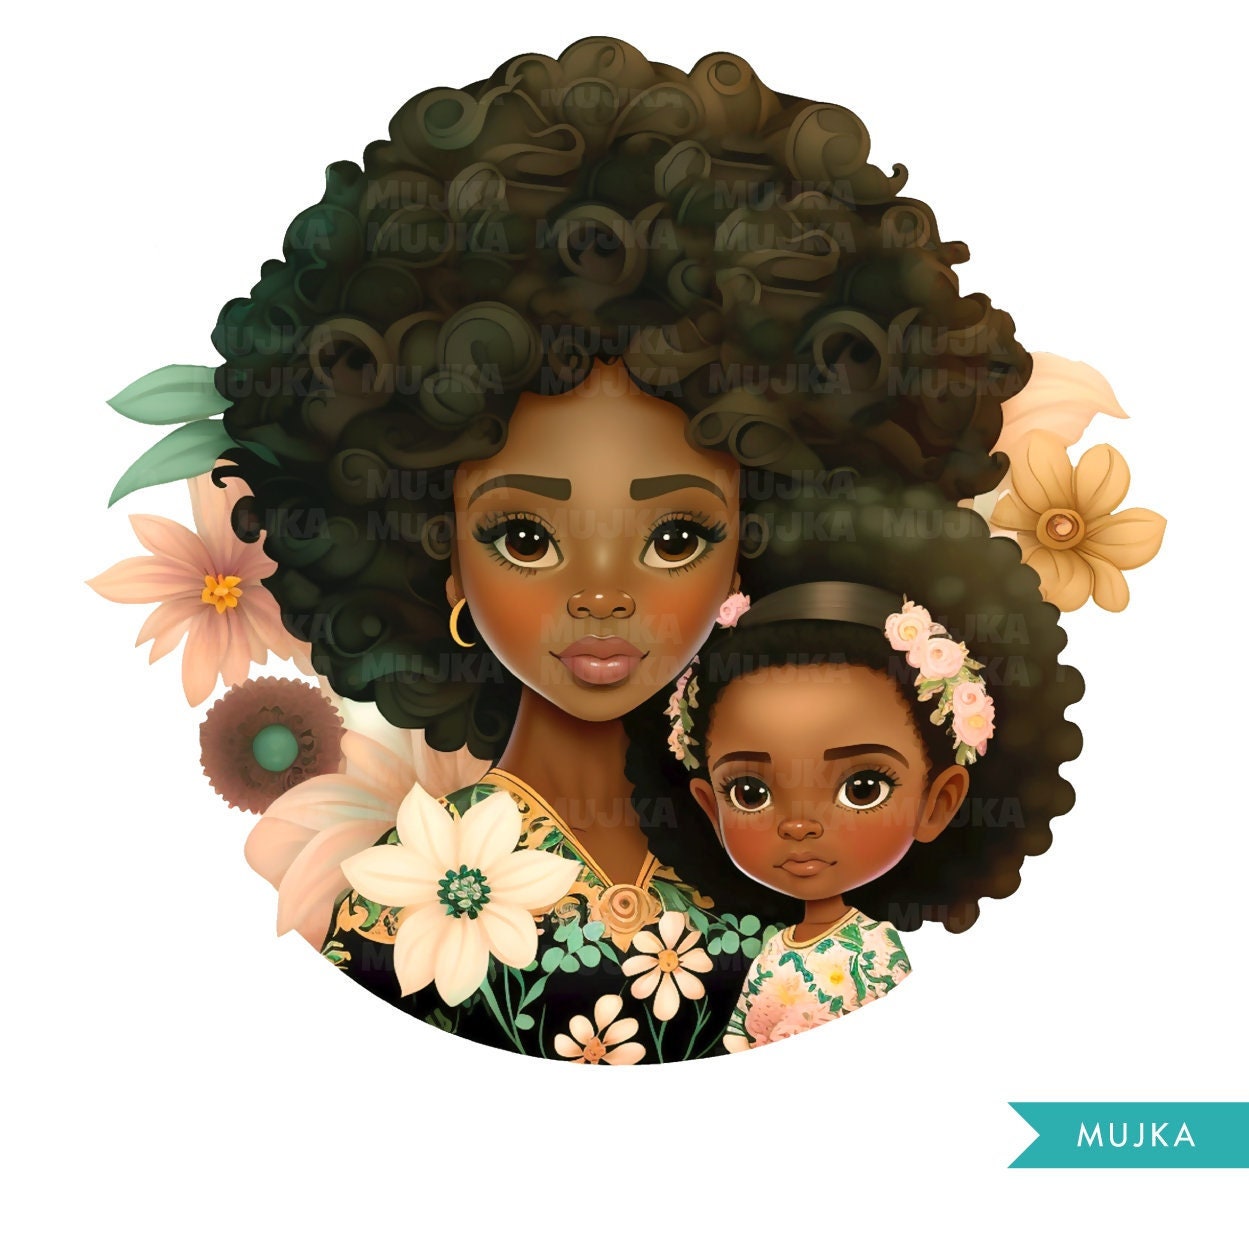 Día de las Madres Png, Arte del Día de la Madre, Imágenes Prediseñadas de madre e hija negras, png de melanina, diseños de sublimación de mamá, pegatinas de mamá, afroamericano